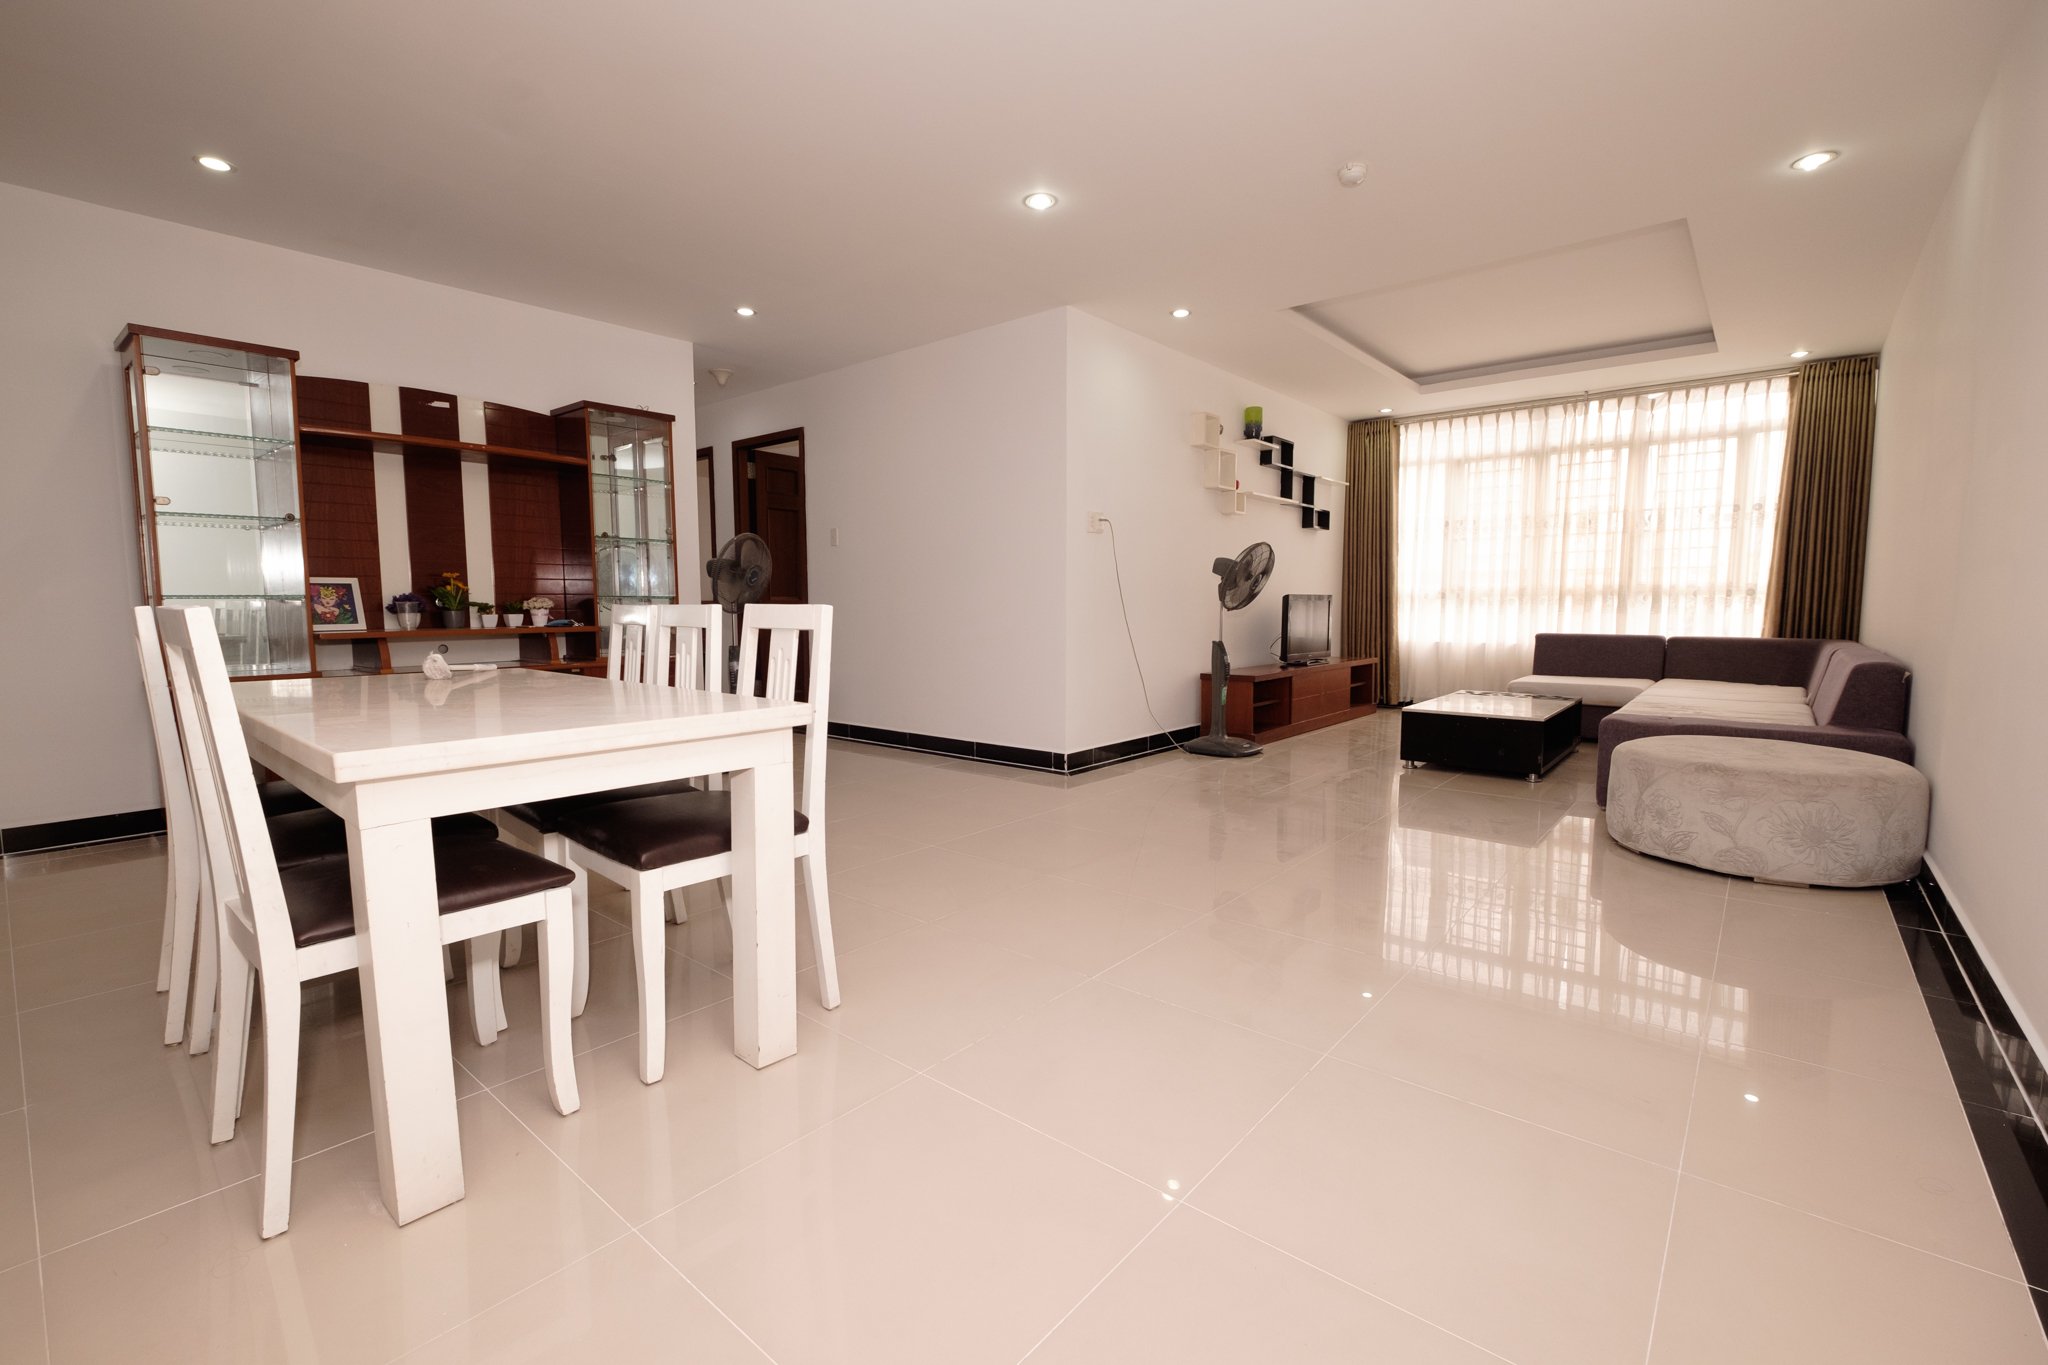 Cần cho thuê căn hộ chung cư Giai Việt, DT150m2, 3 phòng ngủ 2